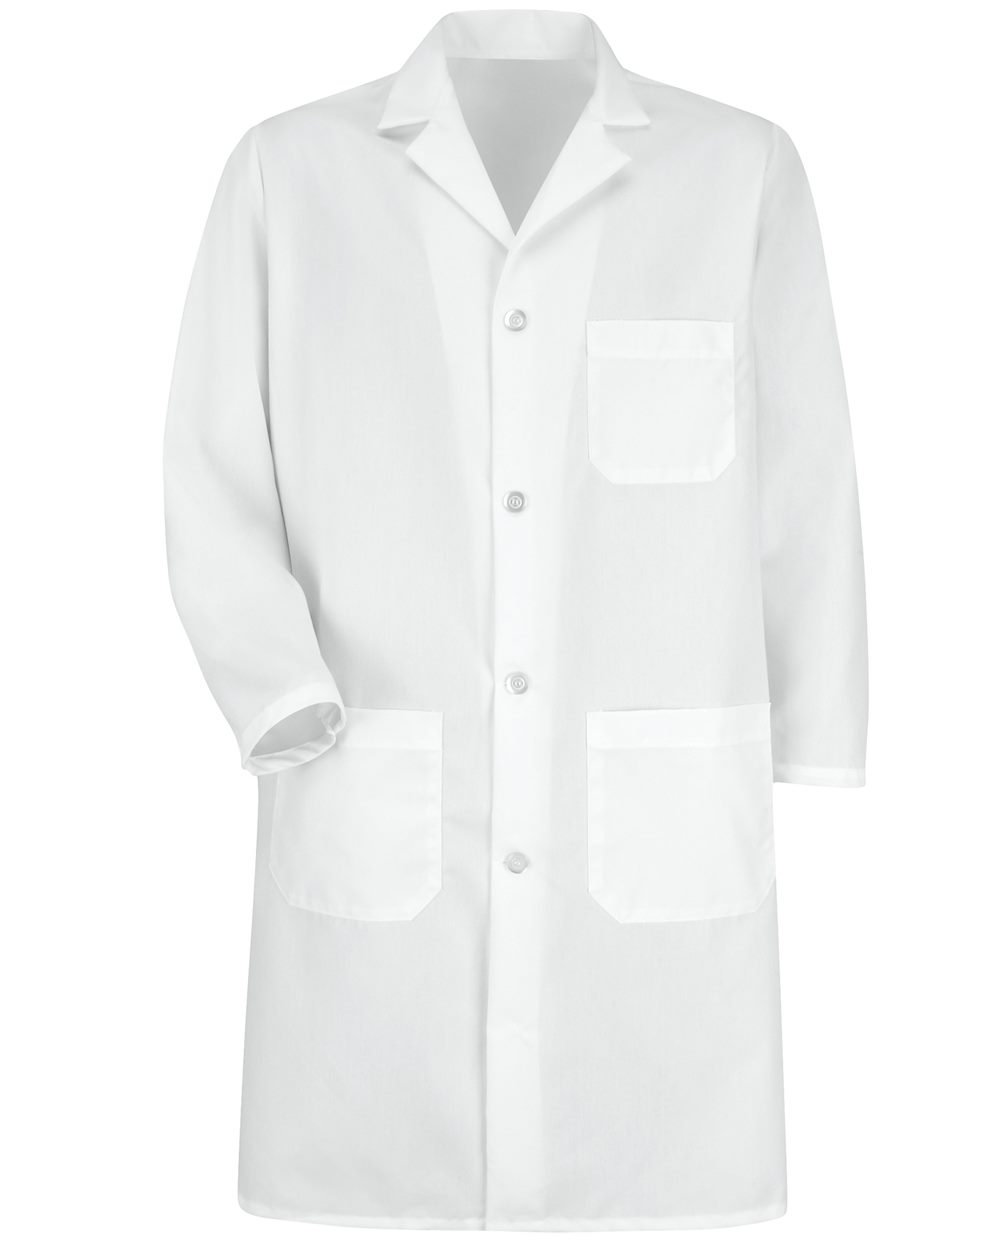 5700 Lab Coat